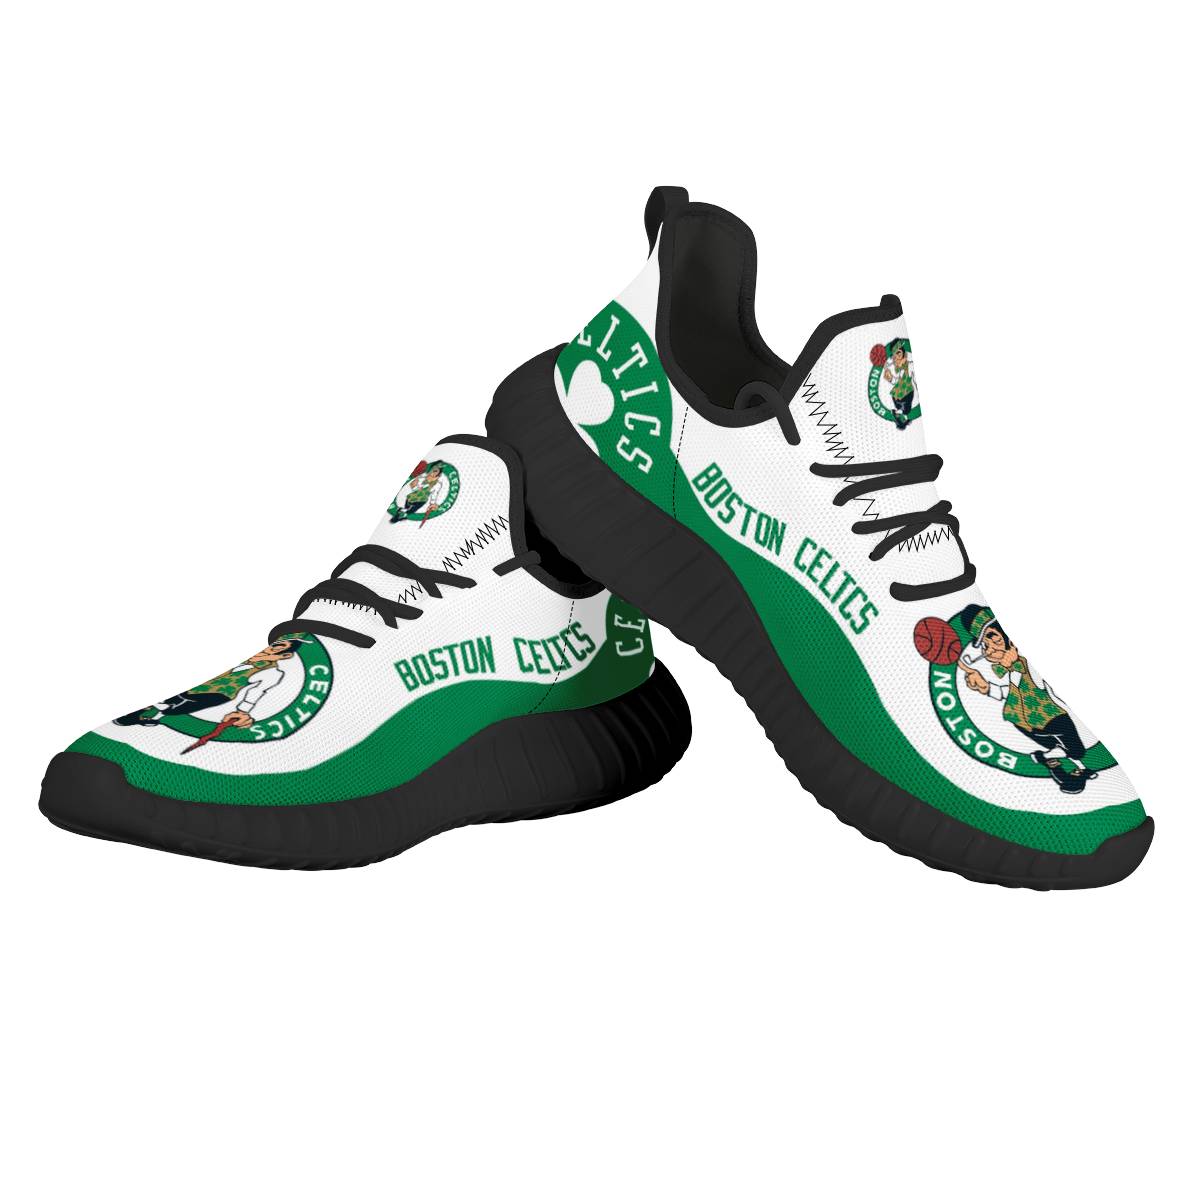 Men's Boston Celtics Mesh Knit Sneakers/Shoes 004